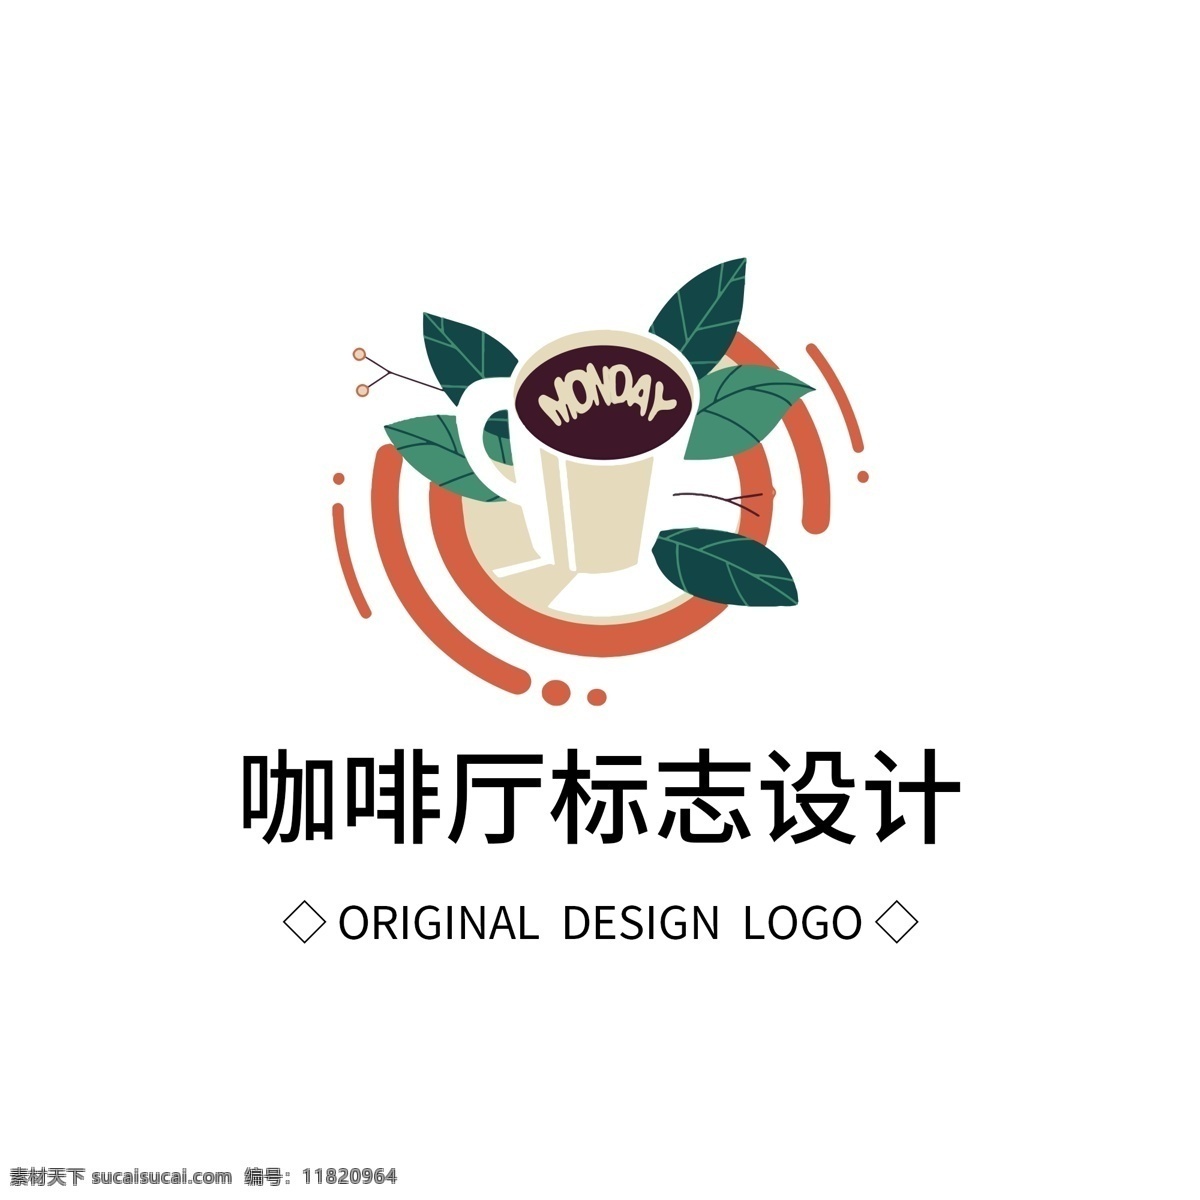 原创 咖啡厅 标志设计 logo 创意 简约 标识 标志 可商用 广告 传媒 字体设计 元素 企业logo 公司logo 徽标 咖啡 茶杯 咖啡杯 绿叶 咖啡logo 饮吧